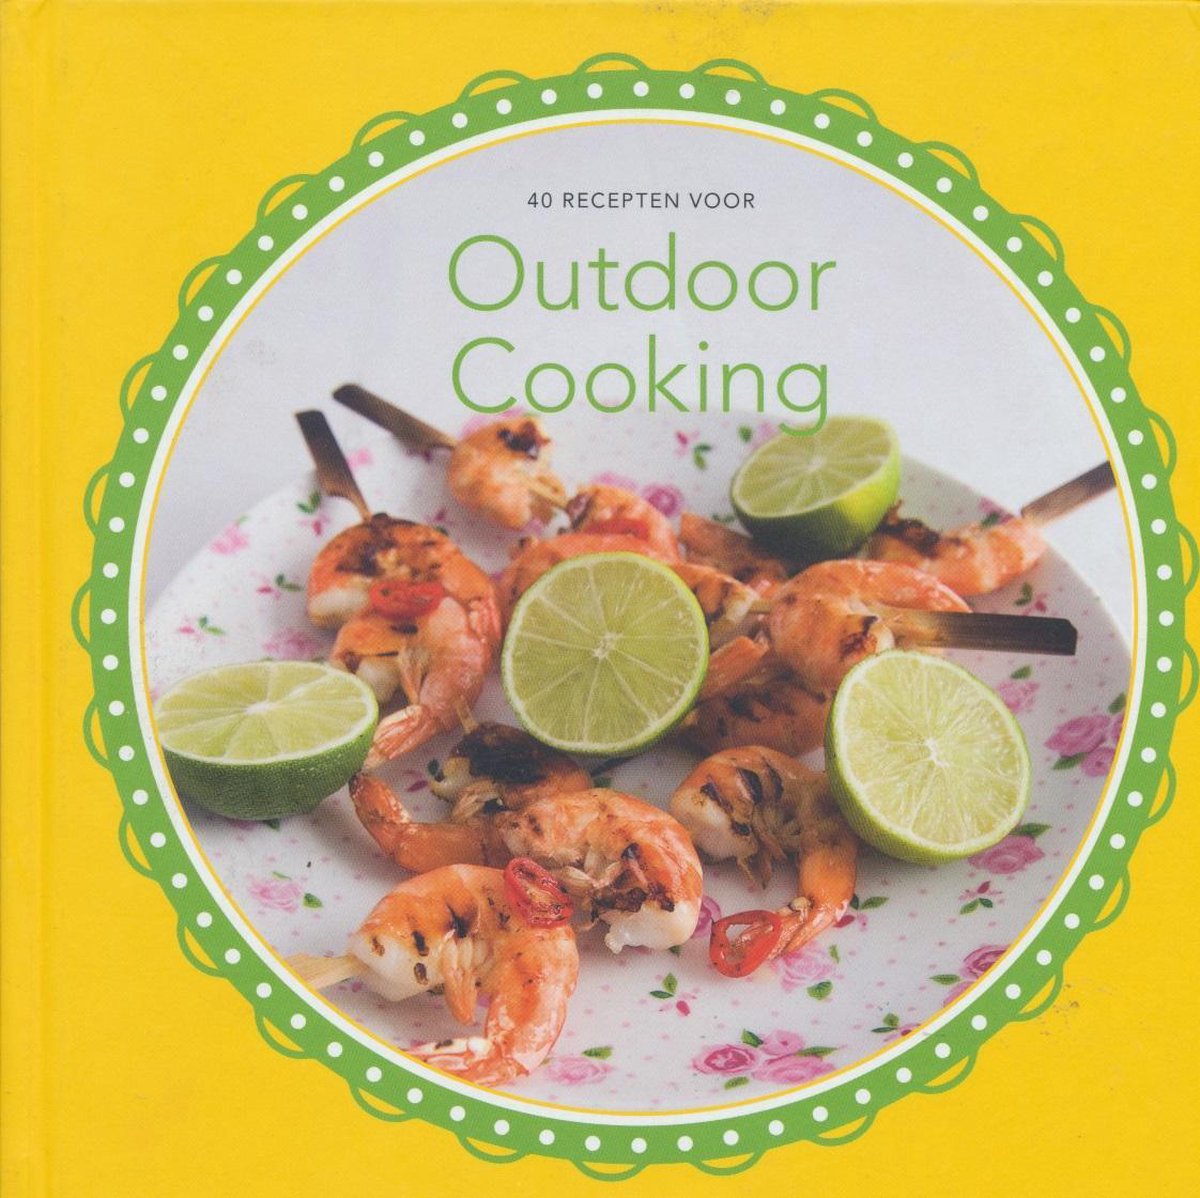 40 recepten voor Outdoor Cooking